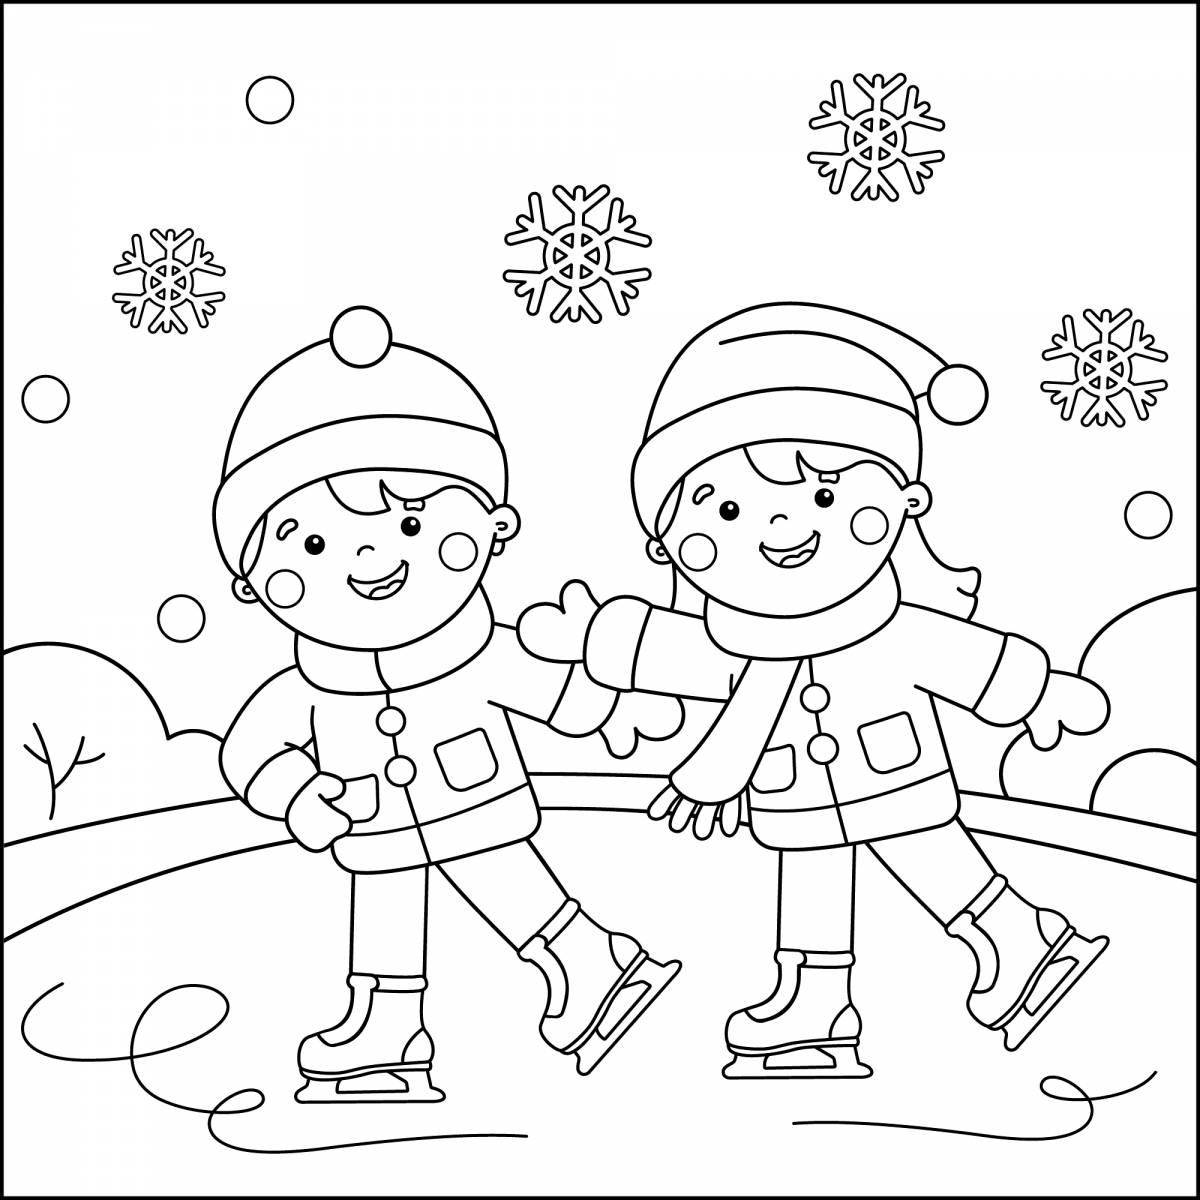 Веселая раскраска зимний спорт для детей 6-7 лет